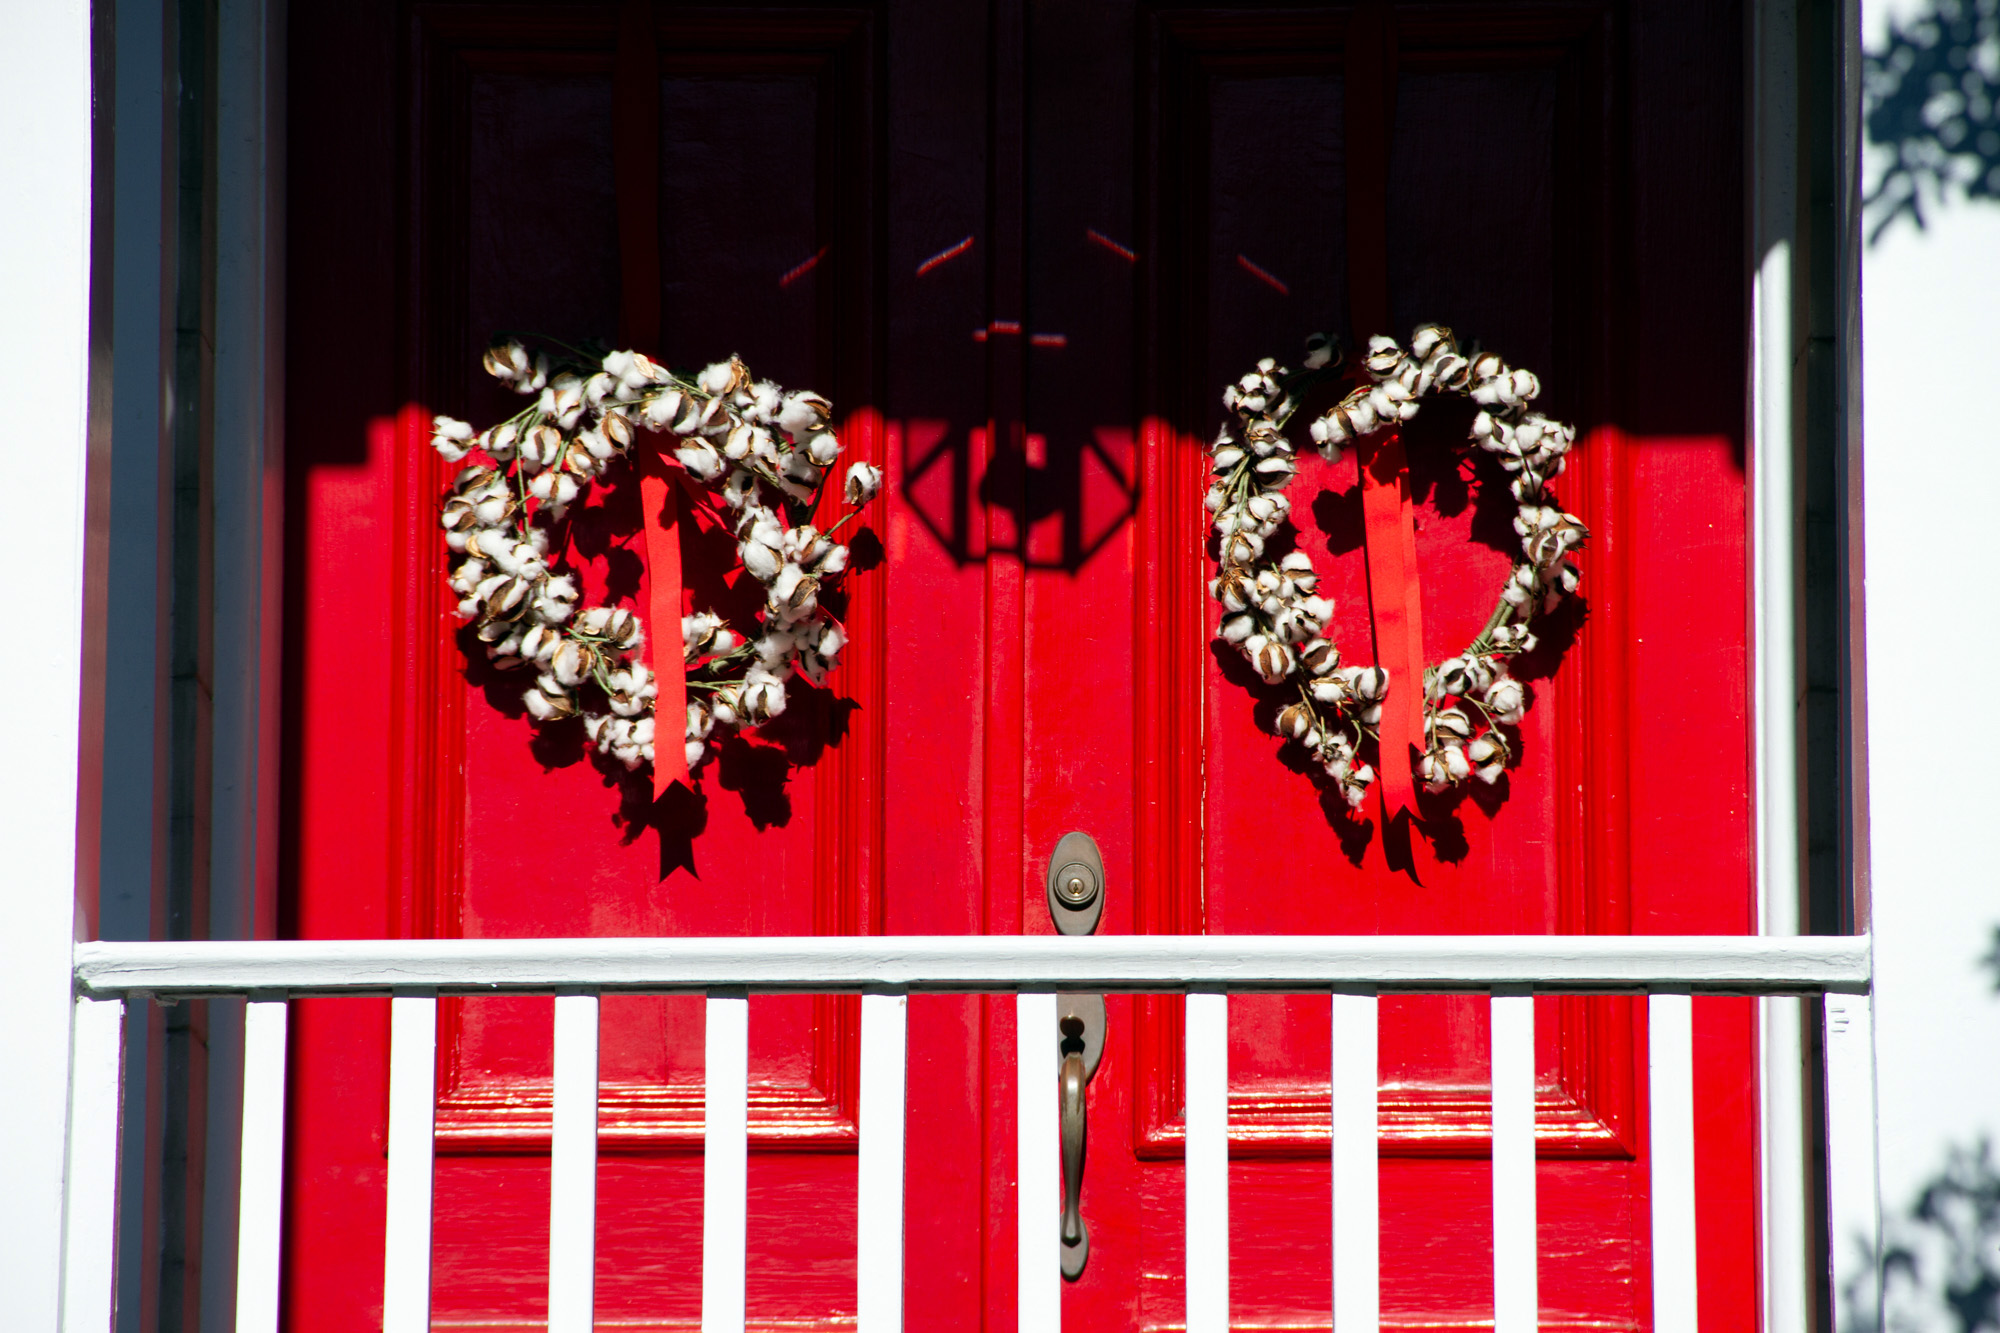 Cotton wreath on red door